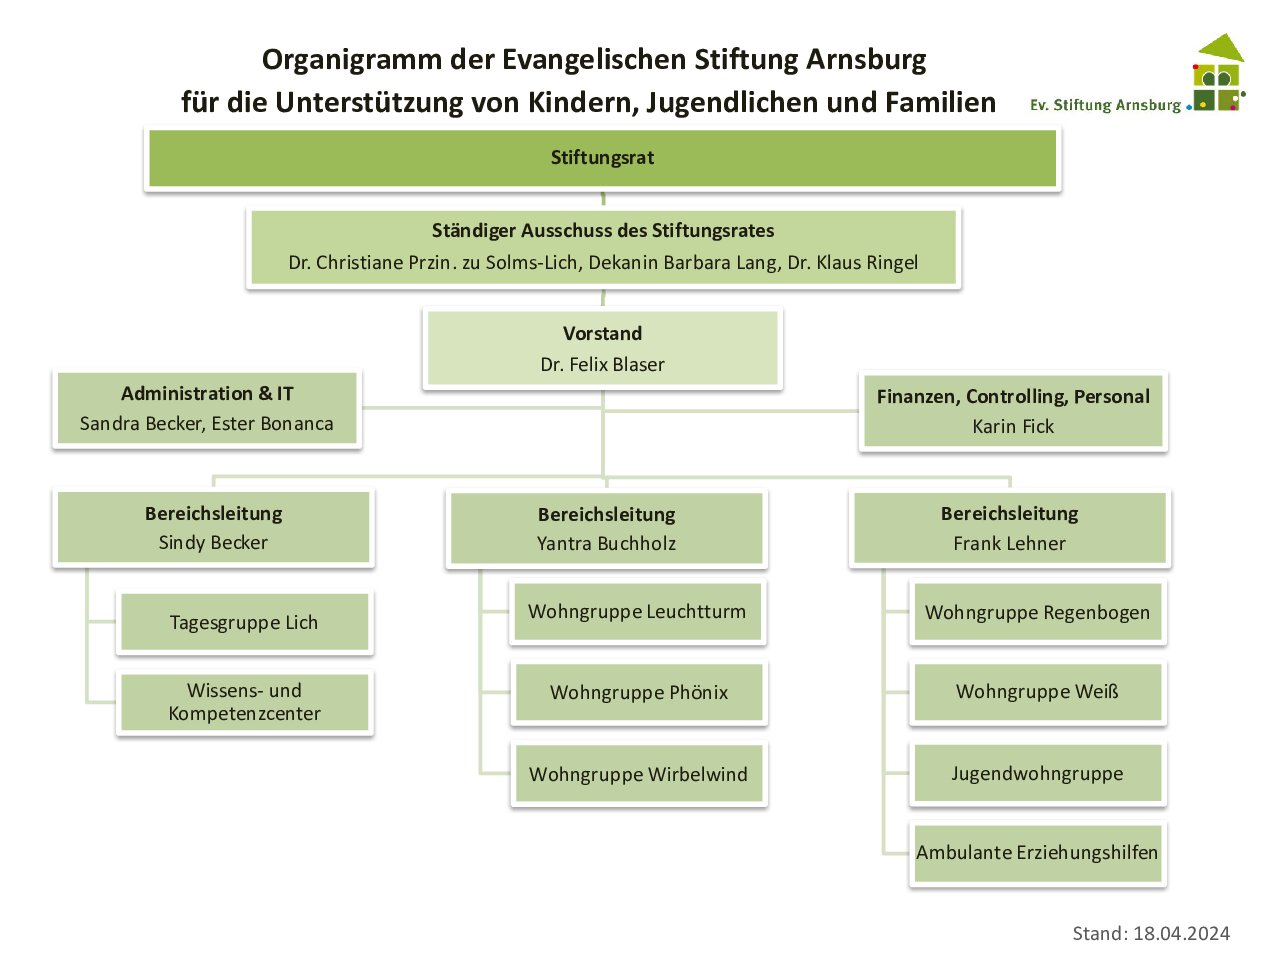 Organigramm der ESTA Arnsburg Stand 27.08.2023